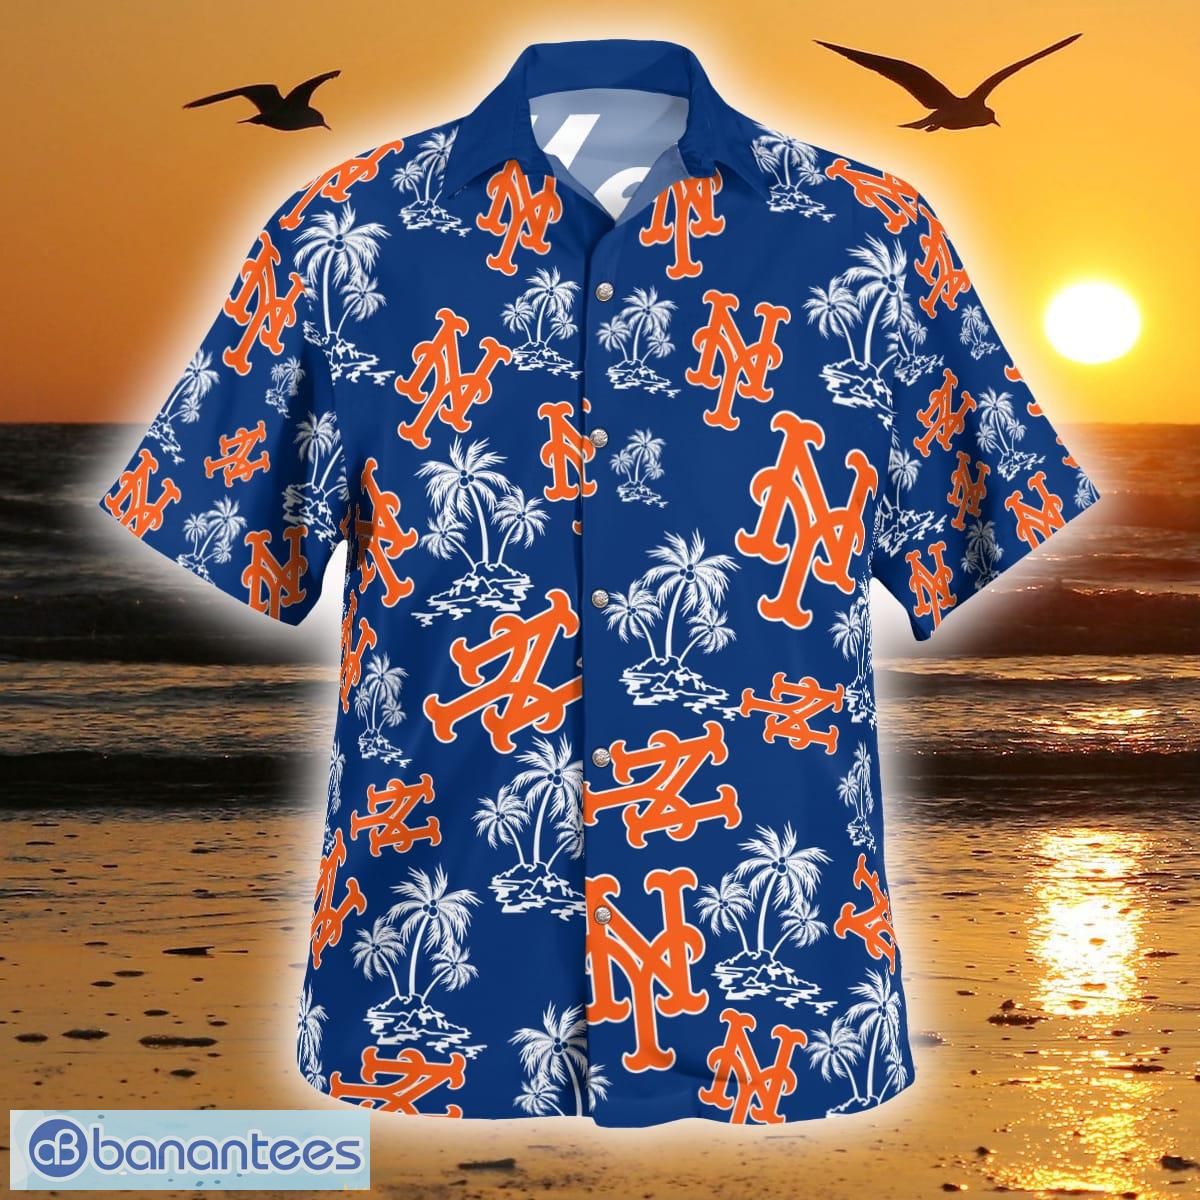 New York Mets Tropical Pattern For Fans Hawaiian Shirt and Short - Banantees